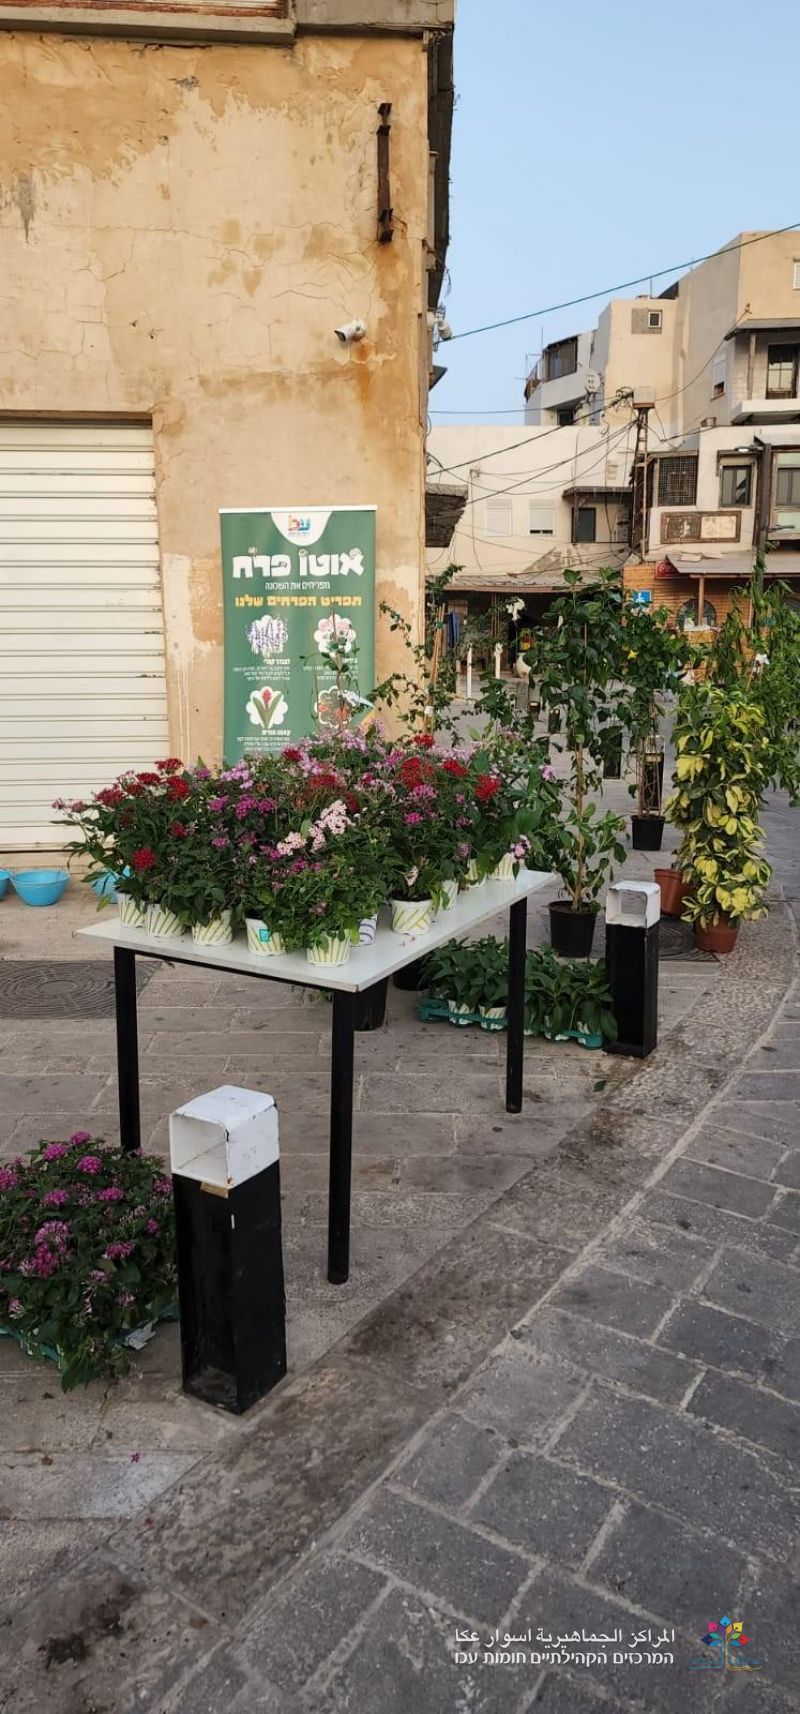 مشروع "حارتي بيتي" يزين حي الفاخورة  بالورود والاشجار بمرافقة سيارة الزهور.